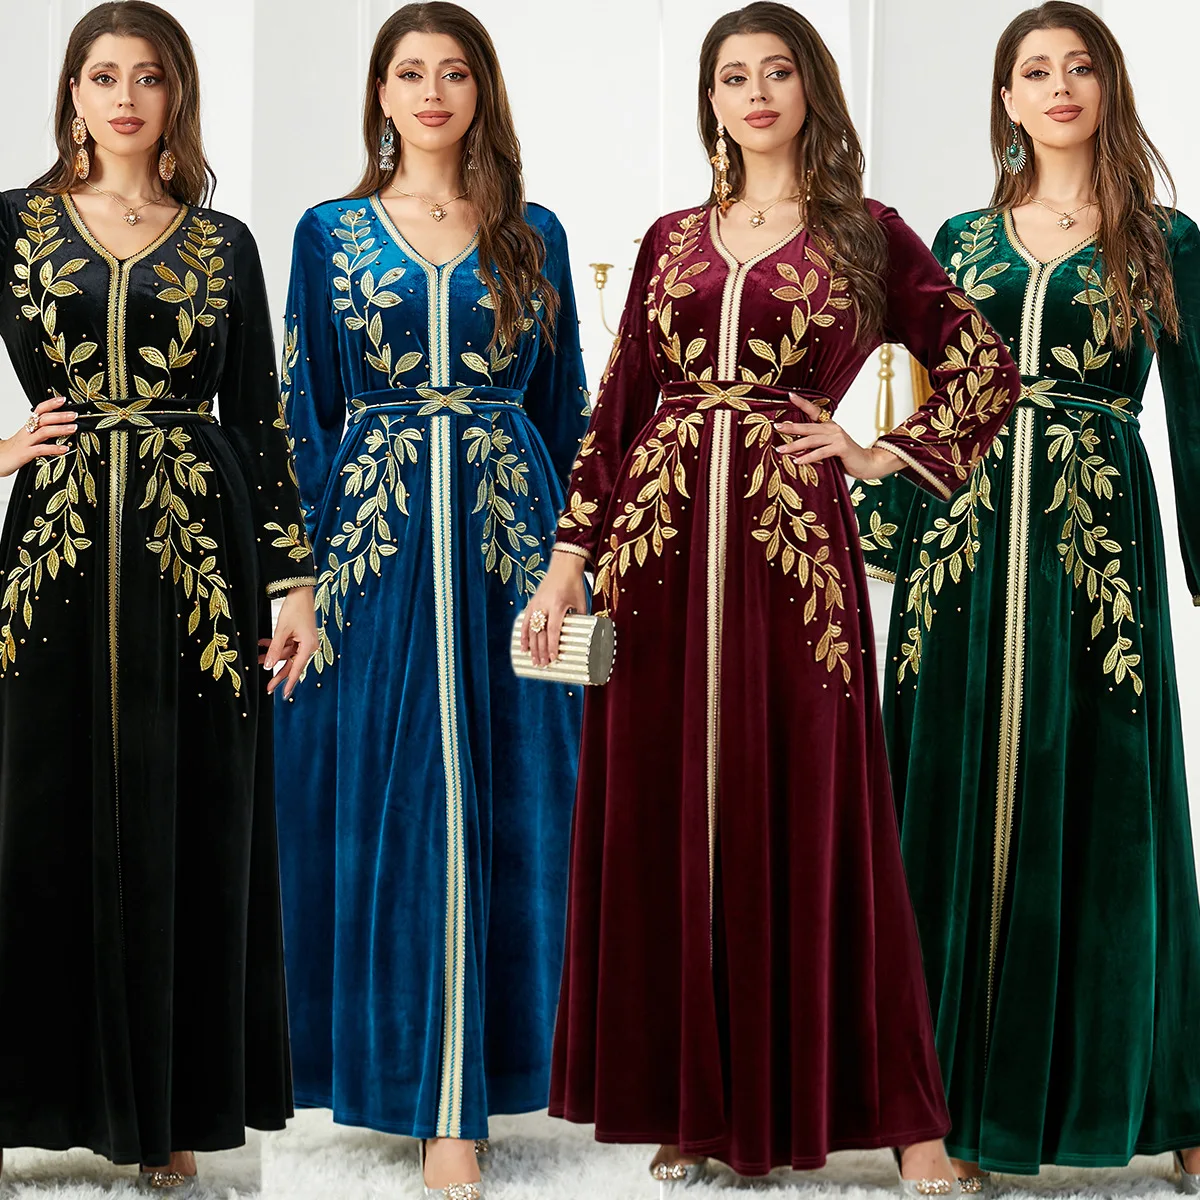 abaya-robe-de-soiree-en-velours-perle-pour-femmes-arabes-robe-brodee-manches-longues-moyen-orient-dubai-Elegant-automne-hiver